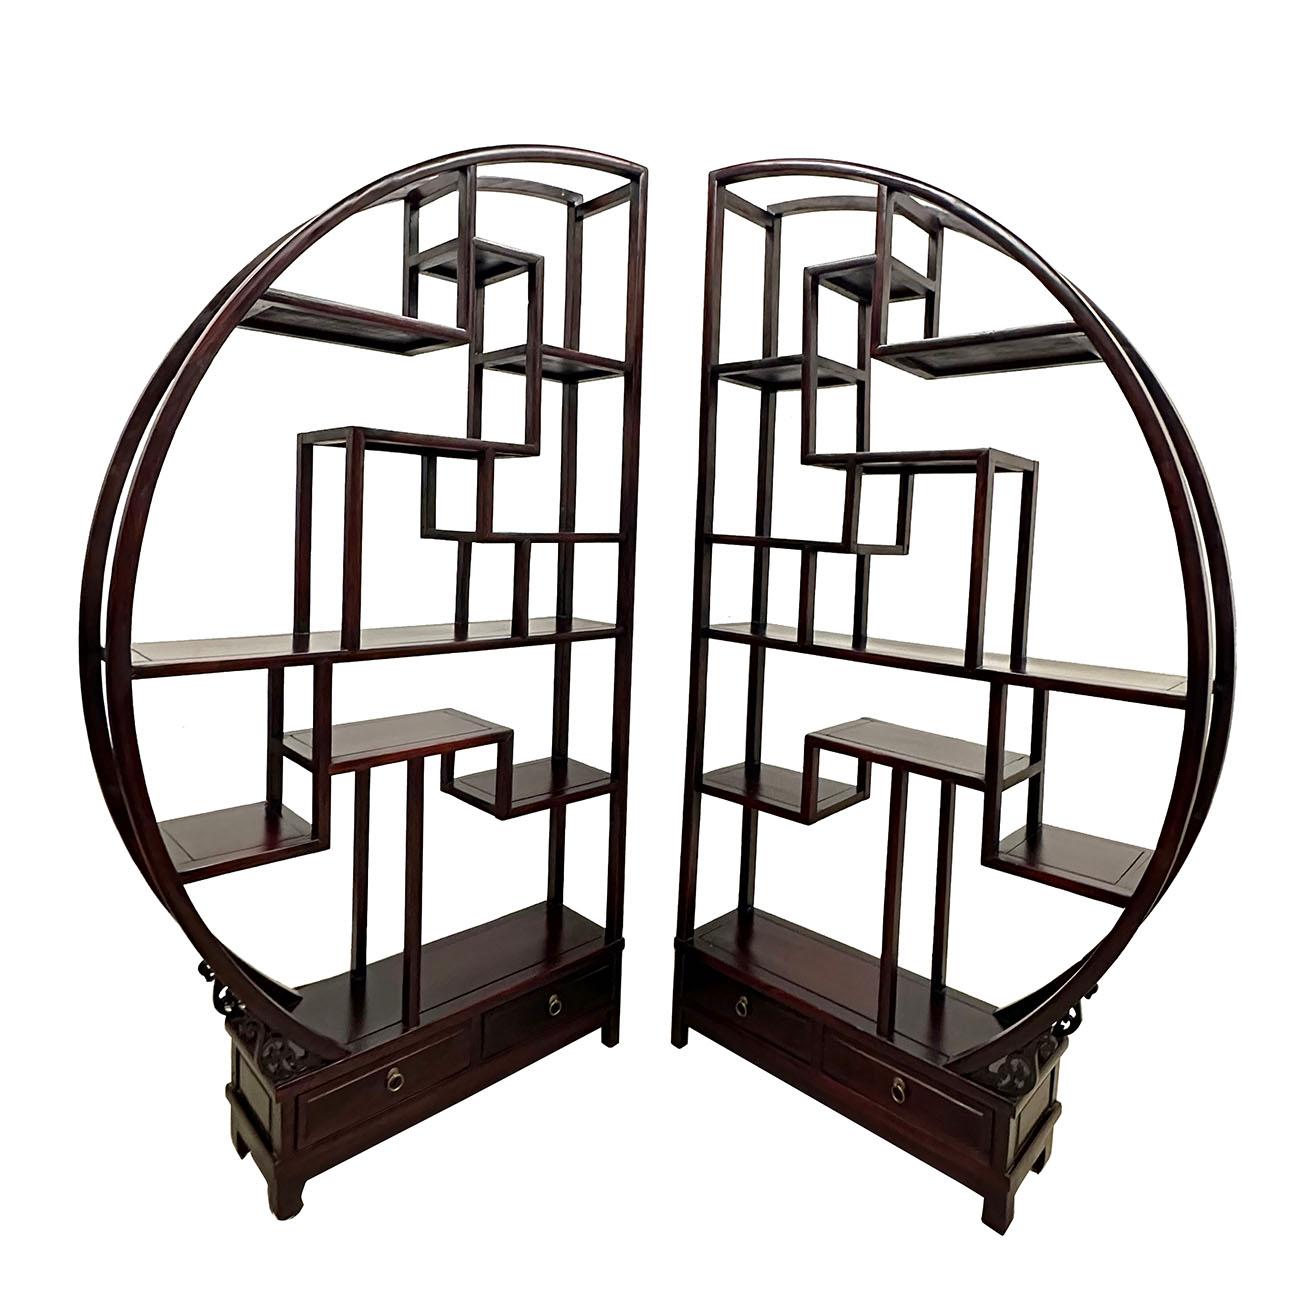 Dieses einzigartige Stück ist ein klassisches chinesisches Art Deco Display/Raumteiler im Originalzustand, alle handgeschnitzten und freistehenden Regale sind in dunklem Mahagoni ausgeführt.   Es verfügt über viele unregelmäßige Formen Regal, um